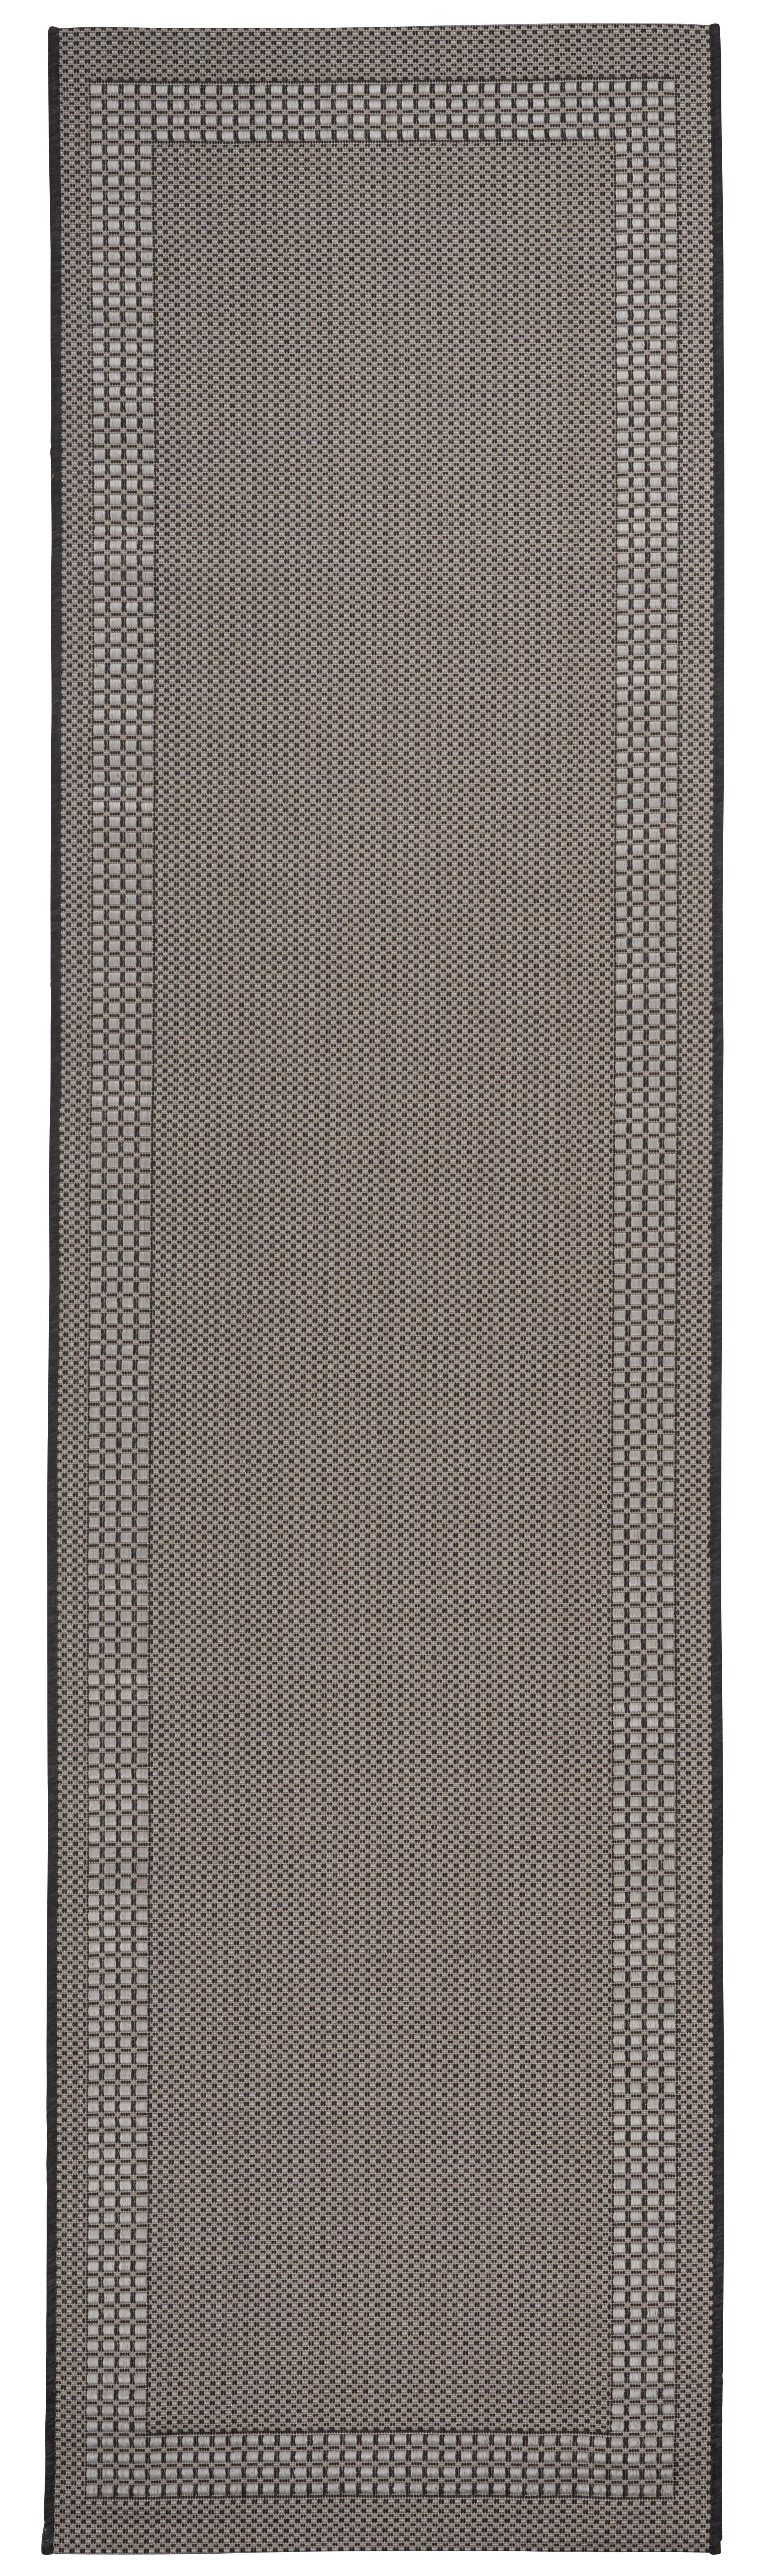 Síkszövött Szőnyeg Naomi 80/290 - Antracit, konvencionális, Textil (80/290cm) - Modern Living